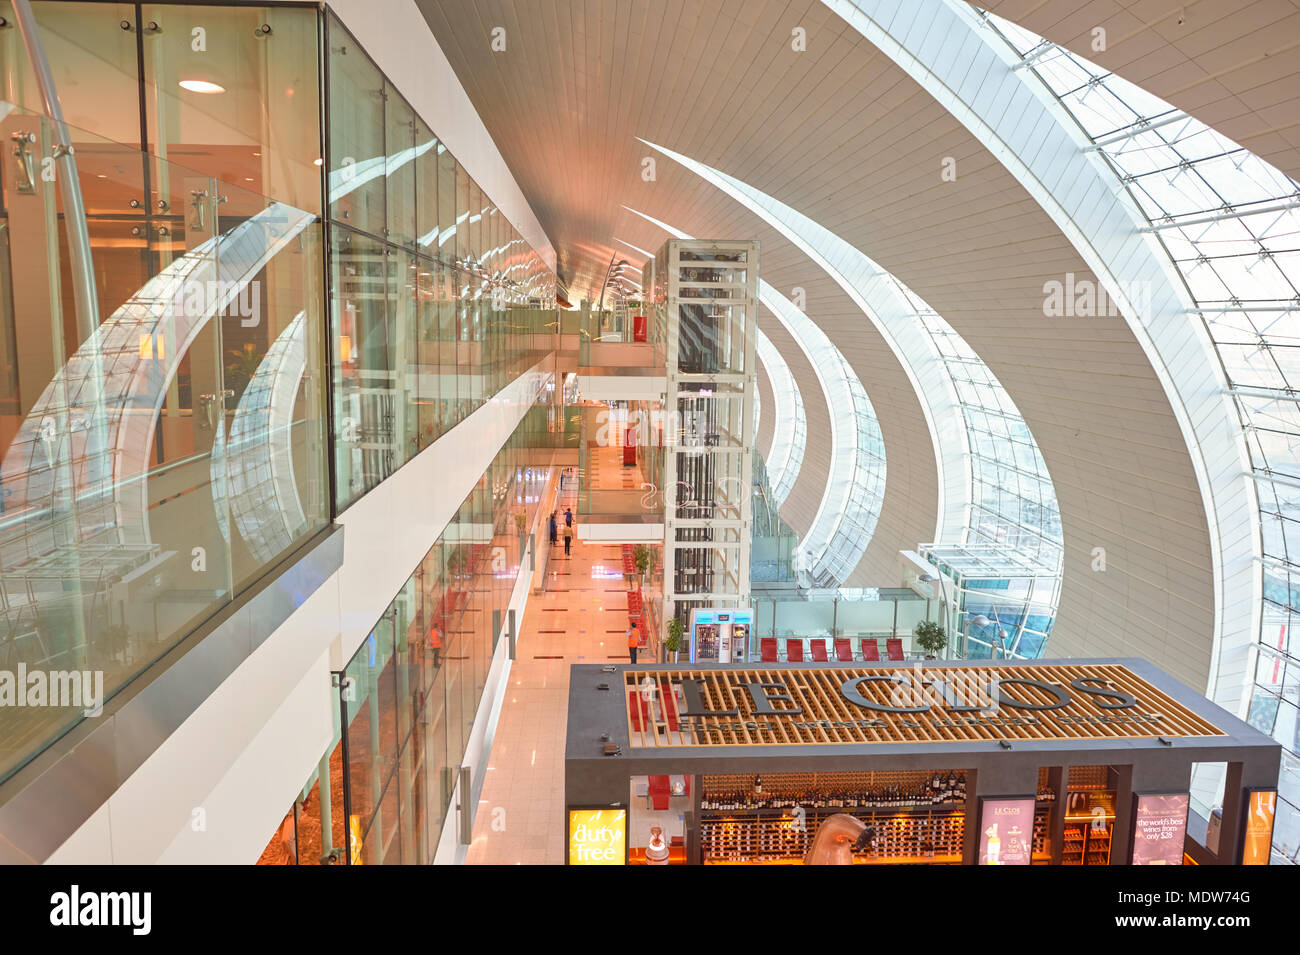 DUBAI, VAE - ca. November 2015: Le Clos store am Dubai International Airport. Le Clos bietet eine vielfältige Auswahl an erlesenen Weinen und Spirituosen Stockfoto